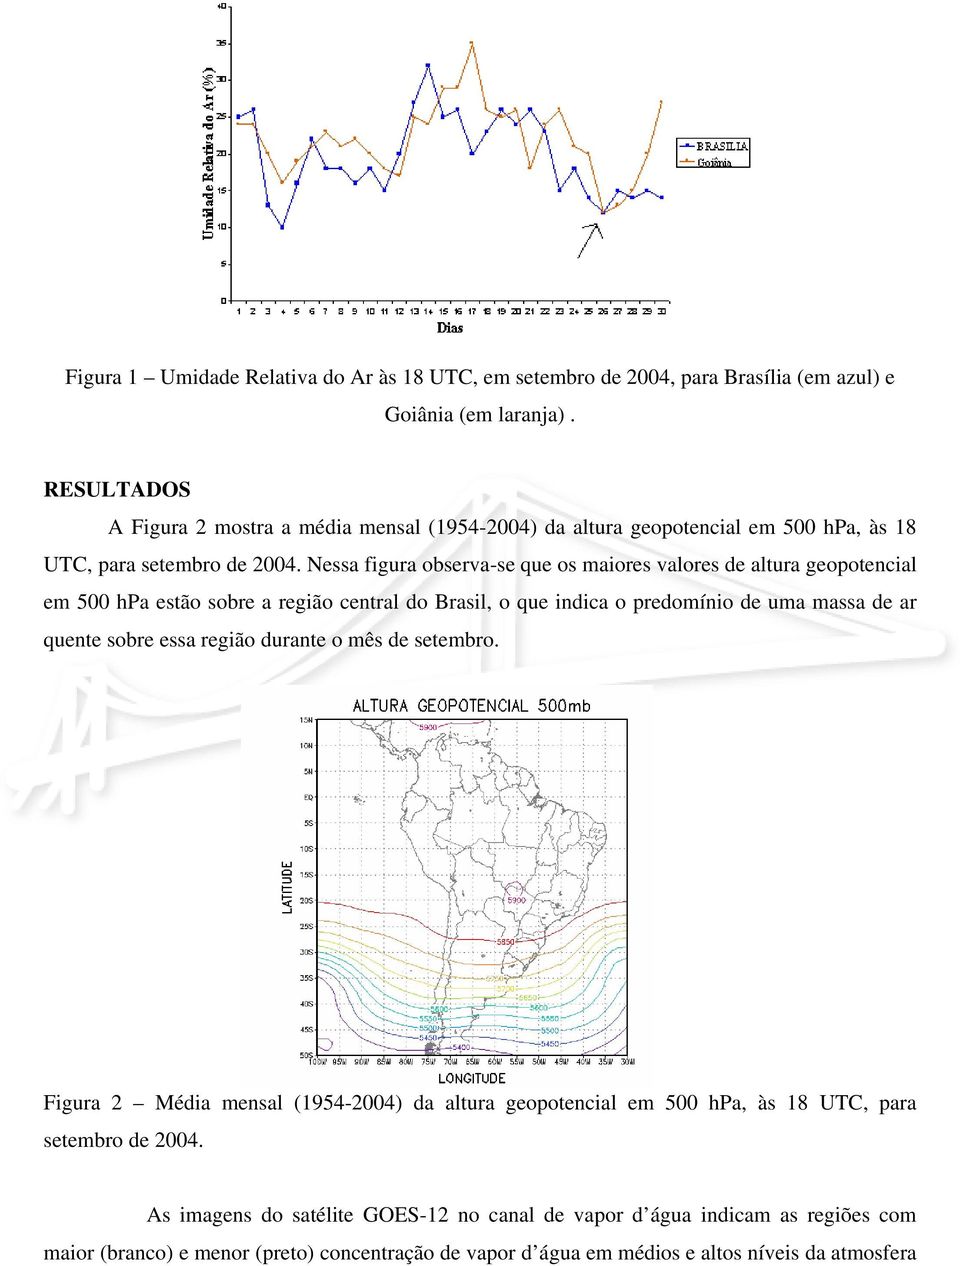 Nessa figura observa-se que os maiores valores de altura geopotencial em 500 hpa estão sobre a região central do Brasil, o que indica o predomínio de uma massa de ar quente sobre essa